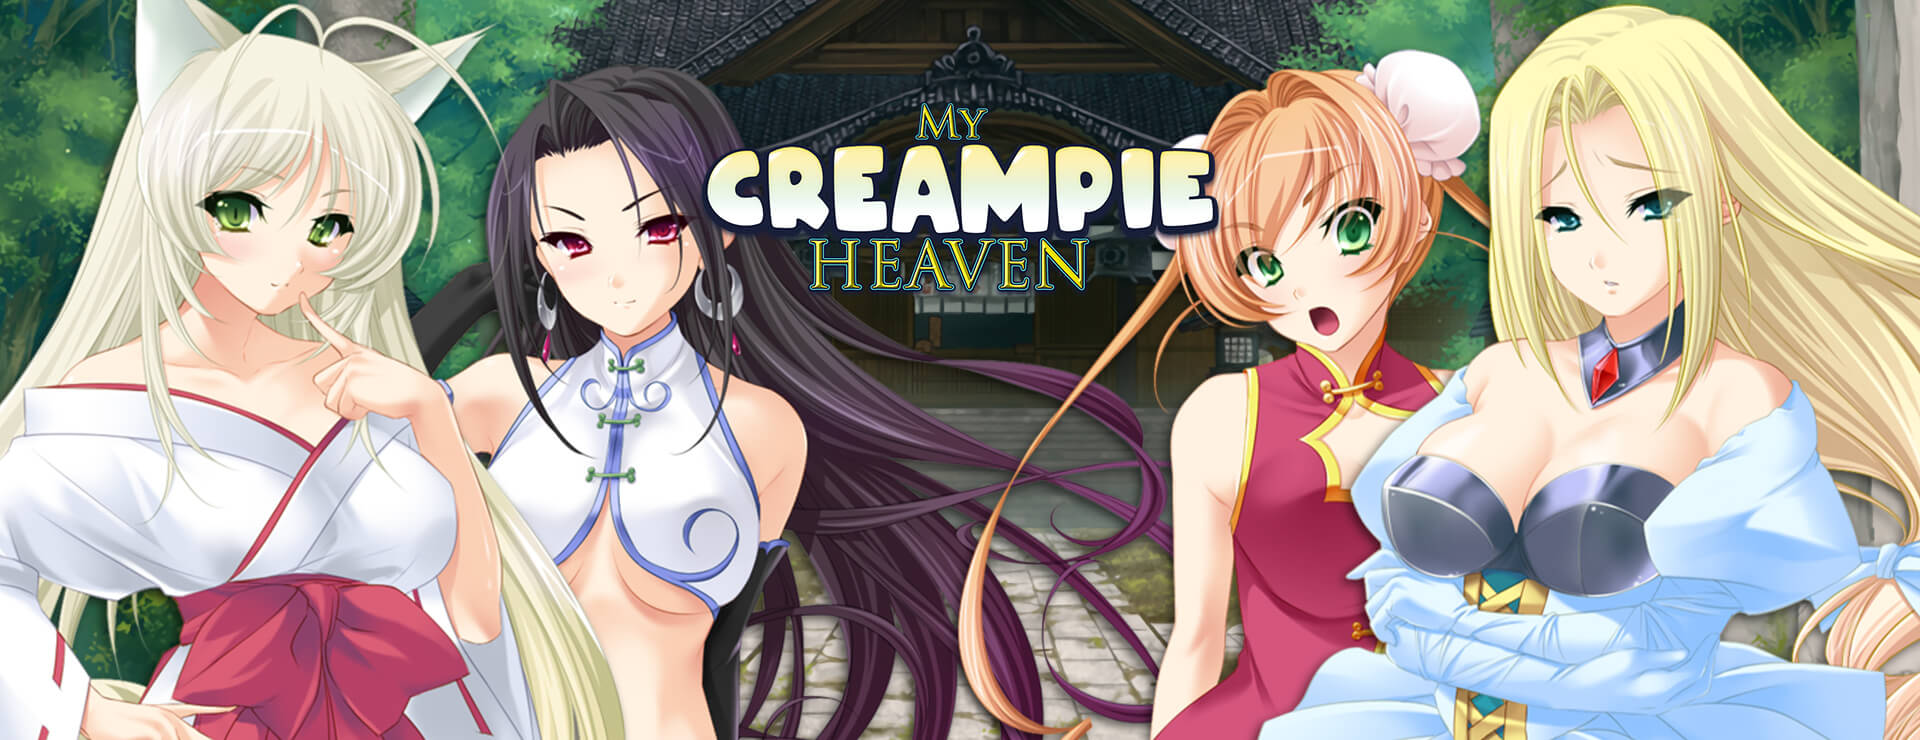 My Creampie Heaven - Powieść wizualna Gra